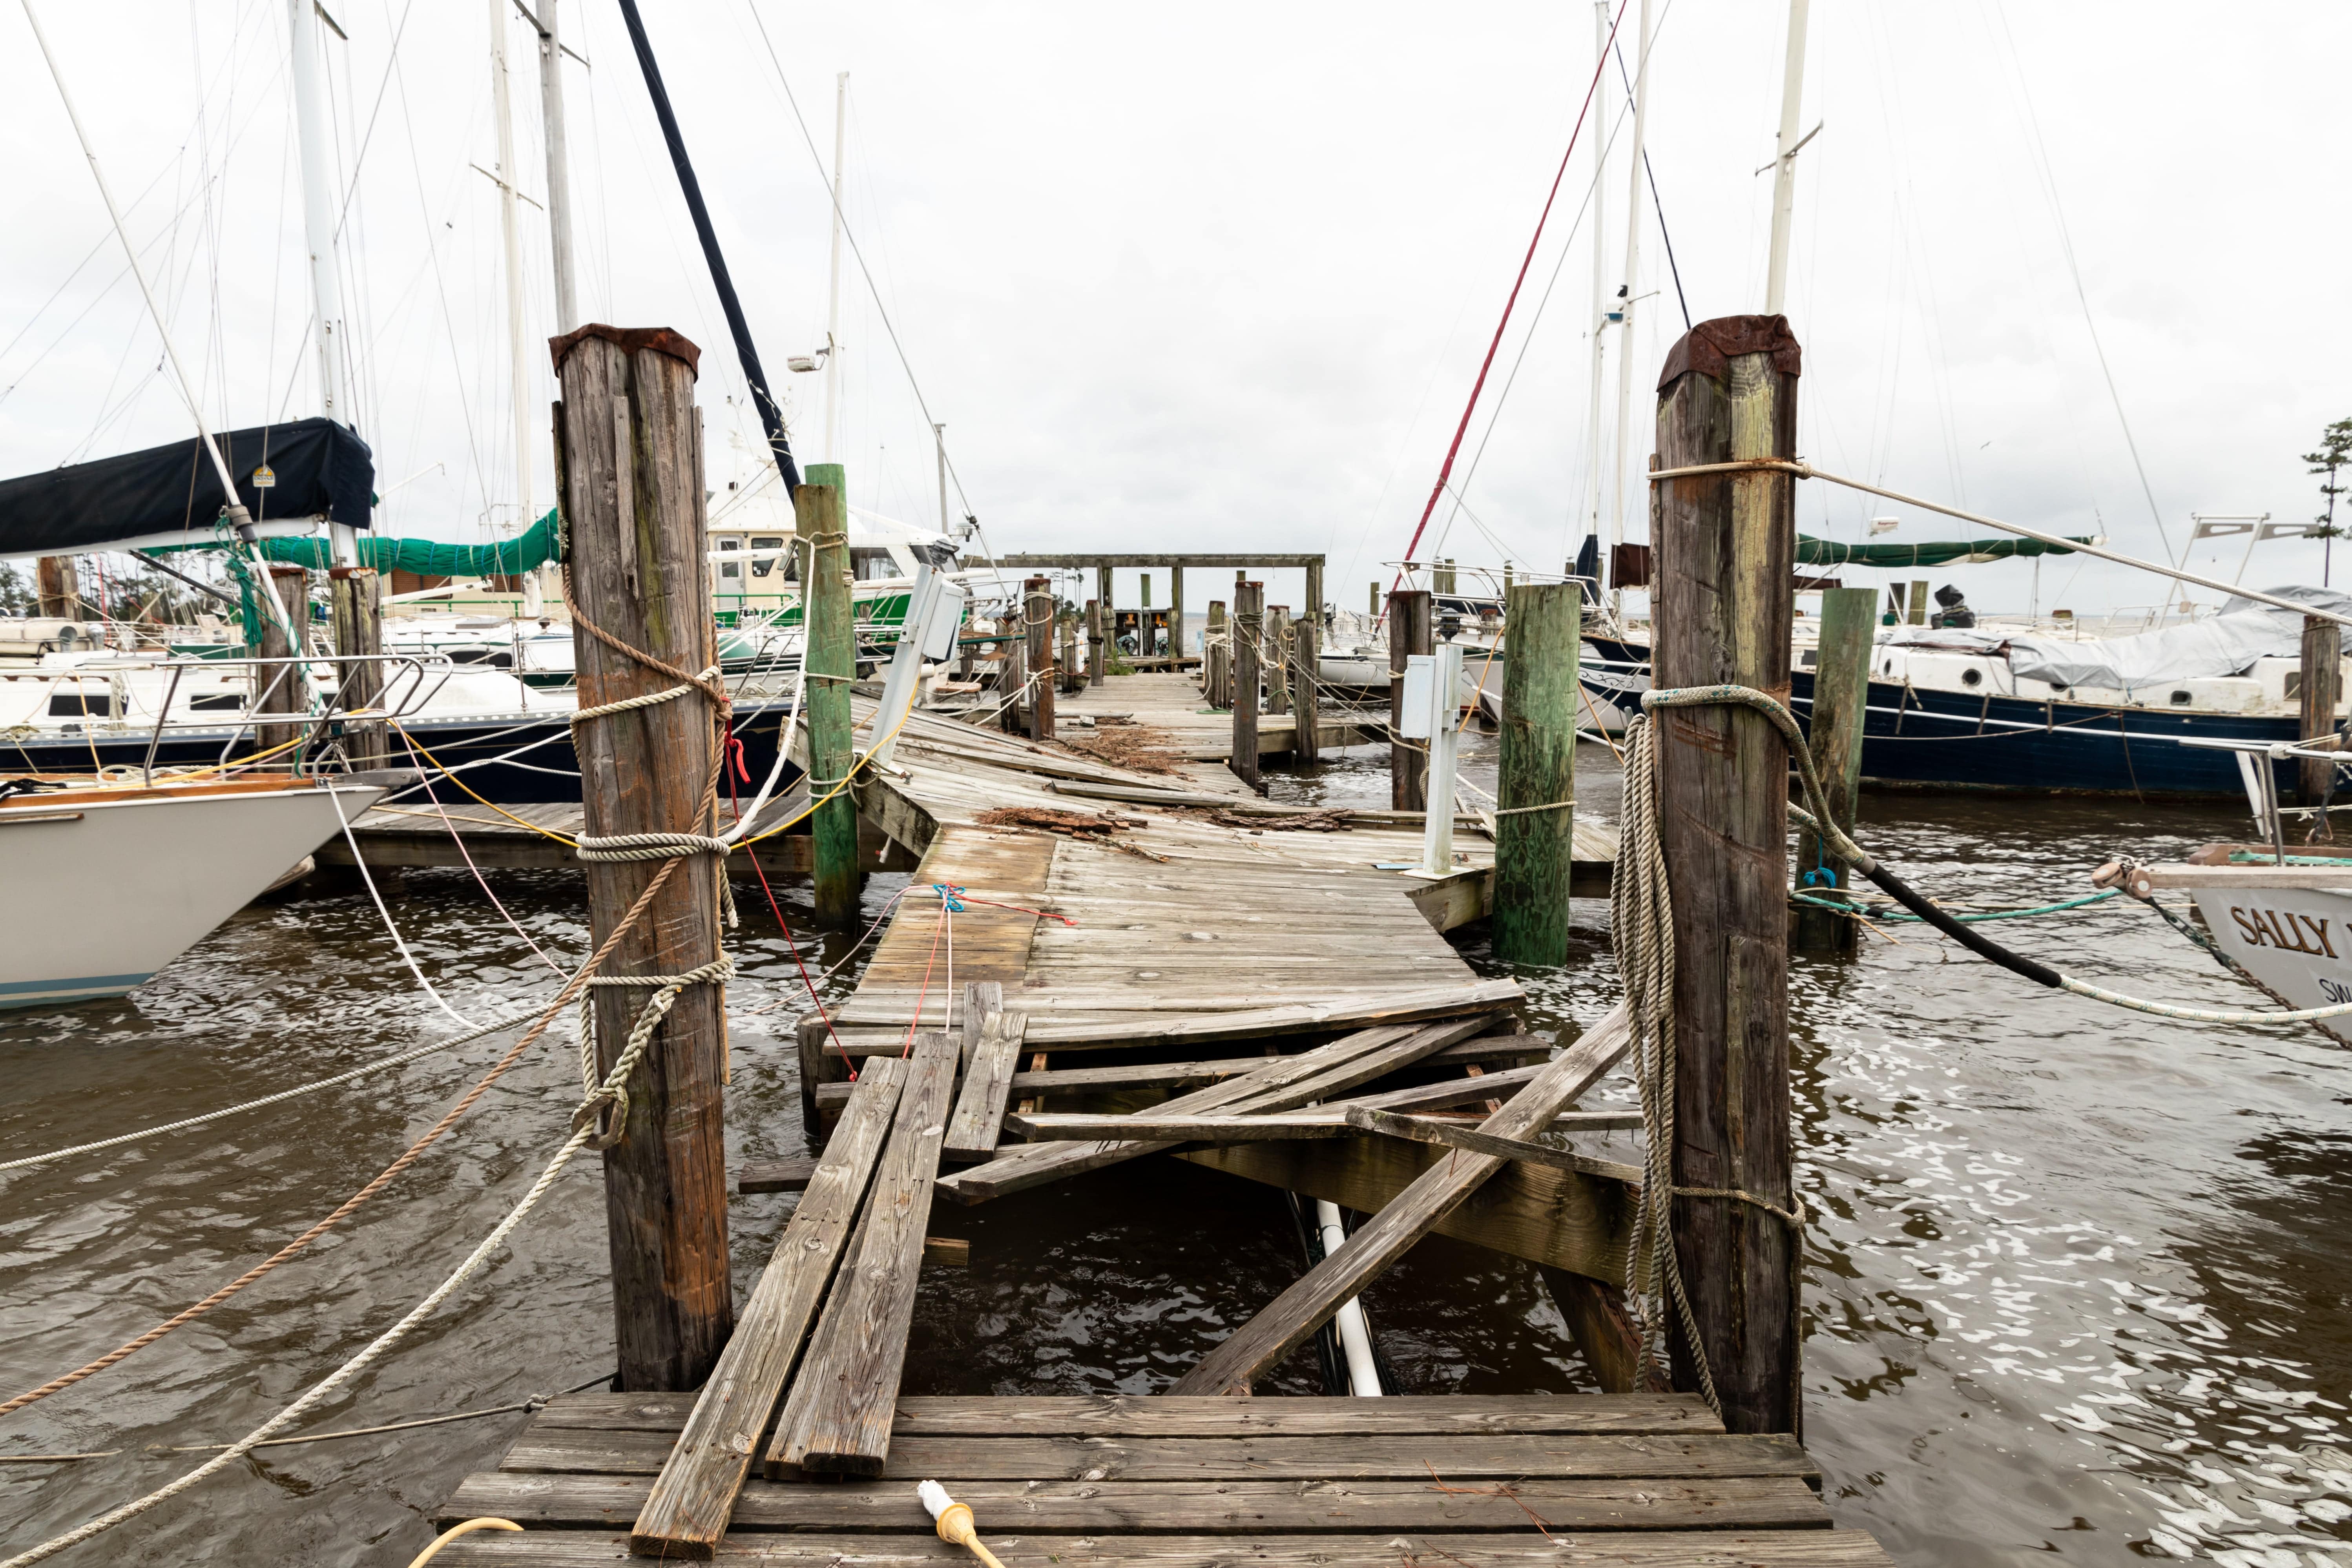 A damaged wooden dock at a marina.